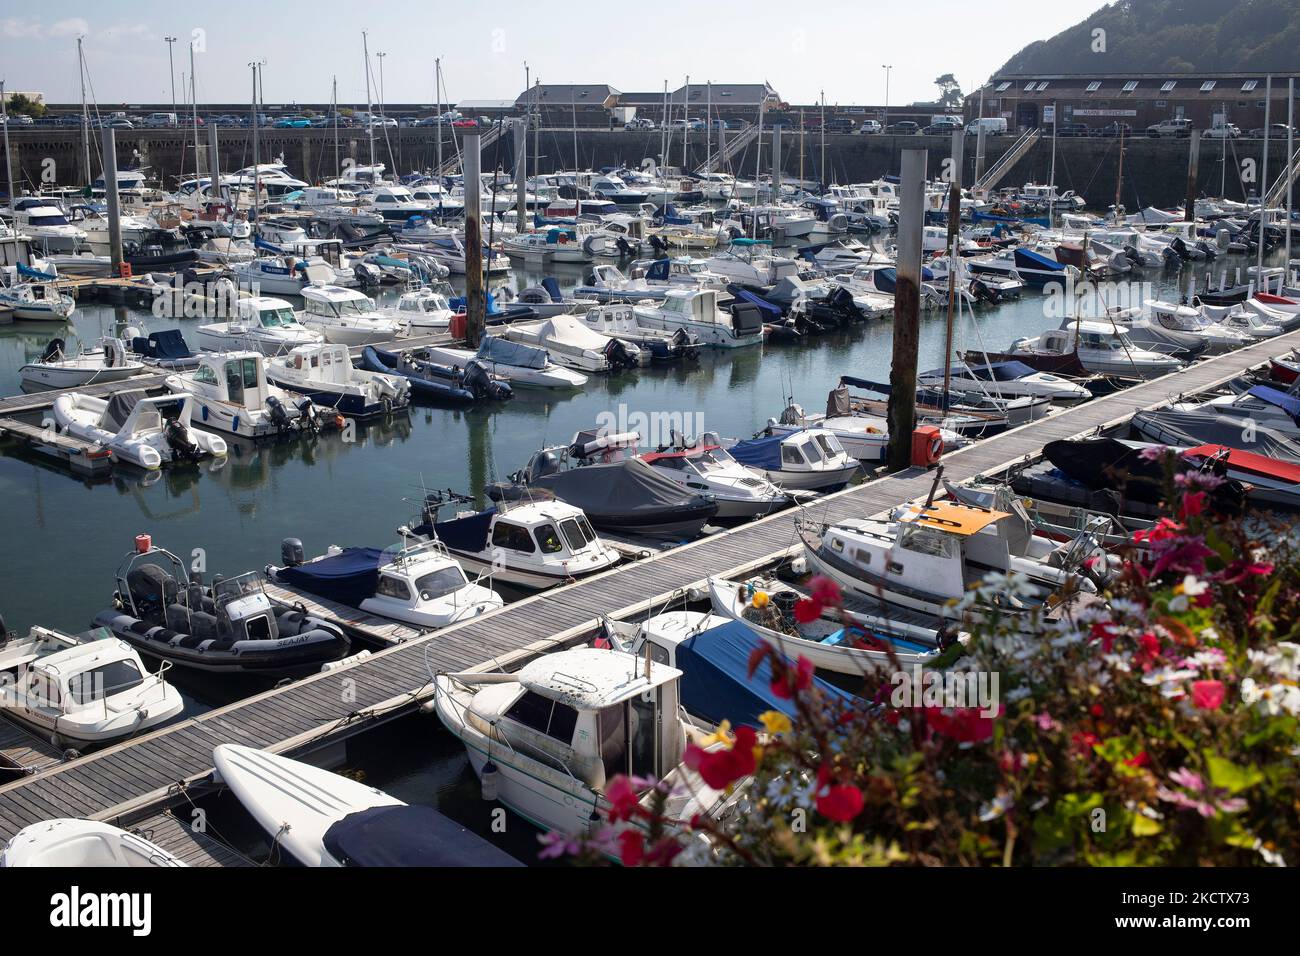 Le port de St Peter Port, Guernesey, une partie des îles Anglo-Normandes, Royaume-Uni Banque D'Images